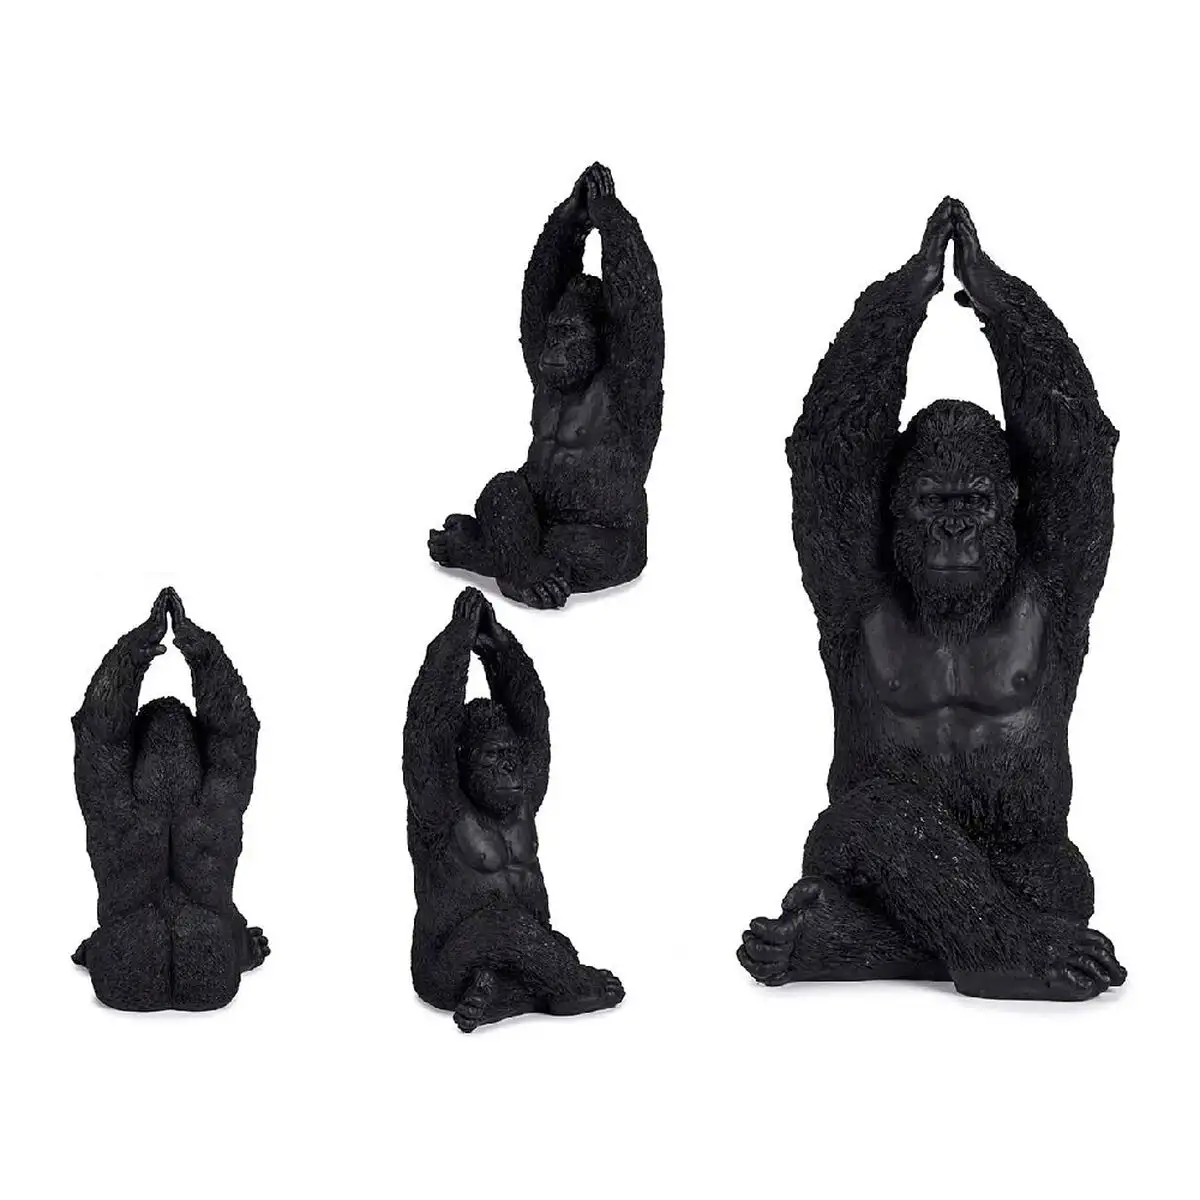 Figurine decorative gorille noir 18 x 36 5 x 19 5 cm_4594. DIAYTAR SENEGAL - Votre Passage vers l'Élégance Abordable. Explorez notre collection où chaque produit est choisi pour sa qualité et son accessibilité, incarnant ainsi l'essence du Sénégal.